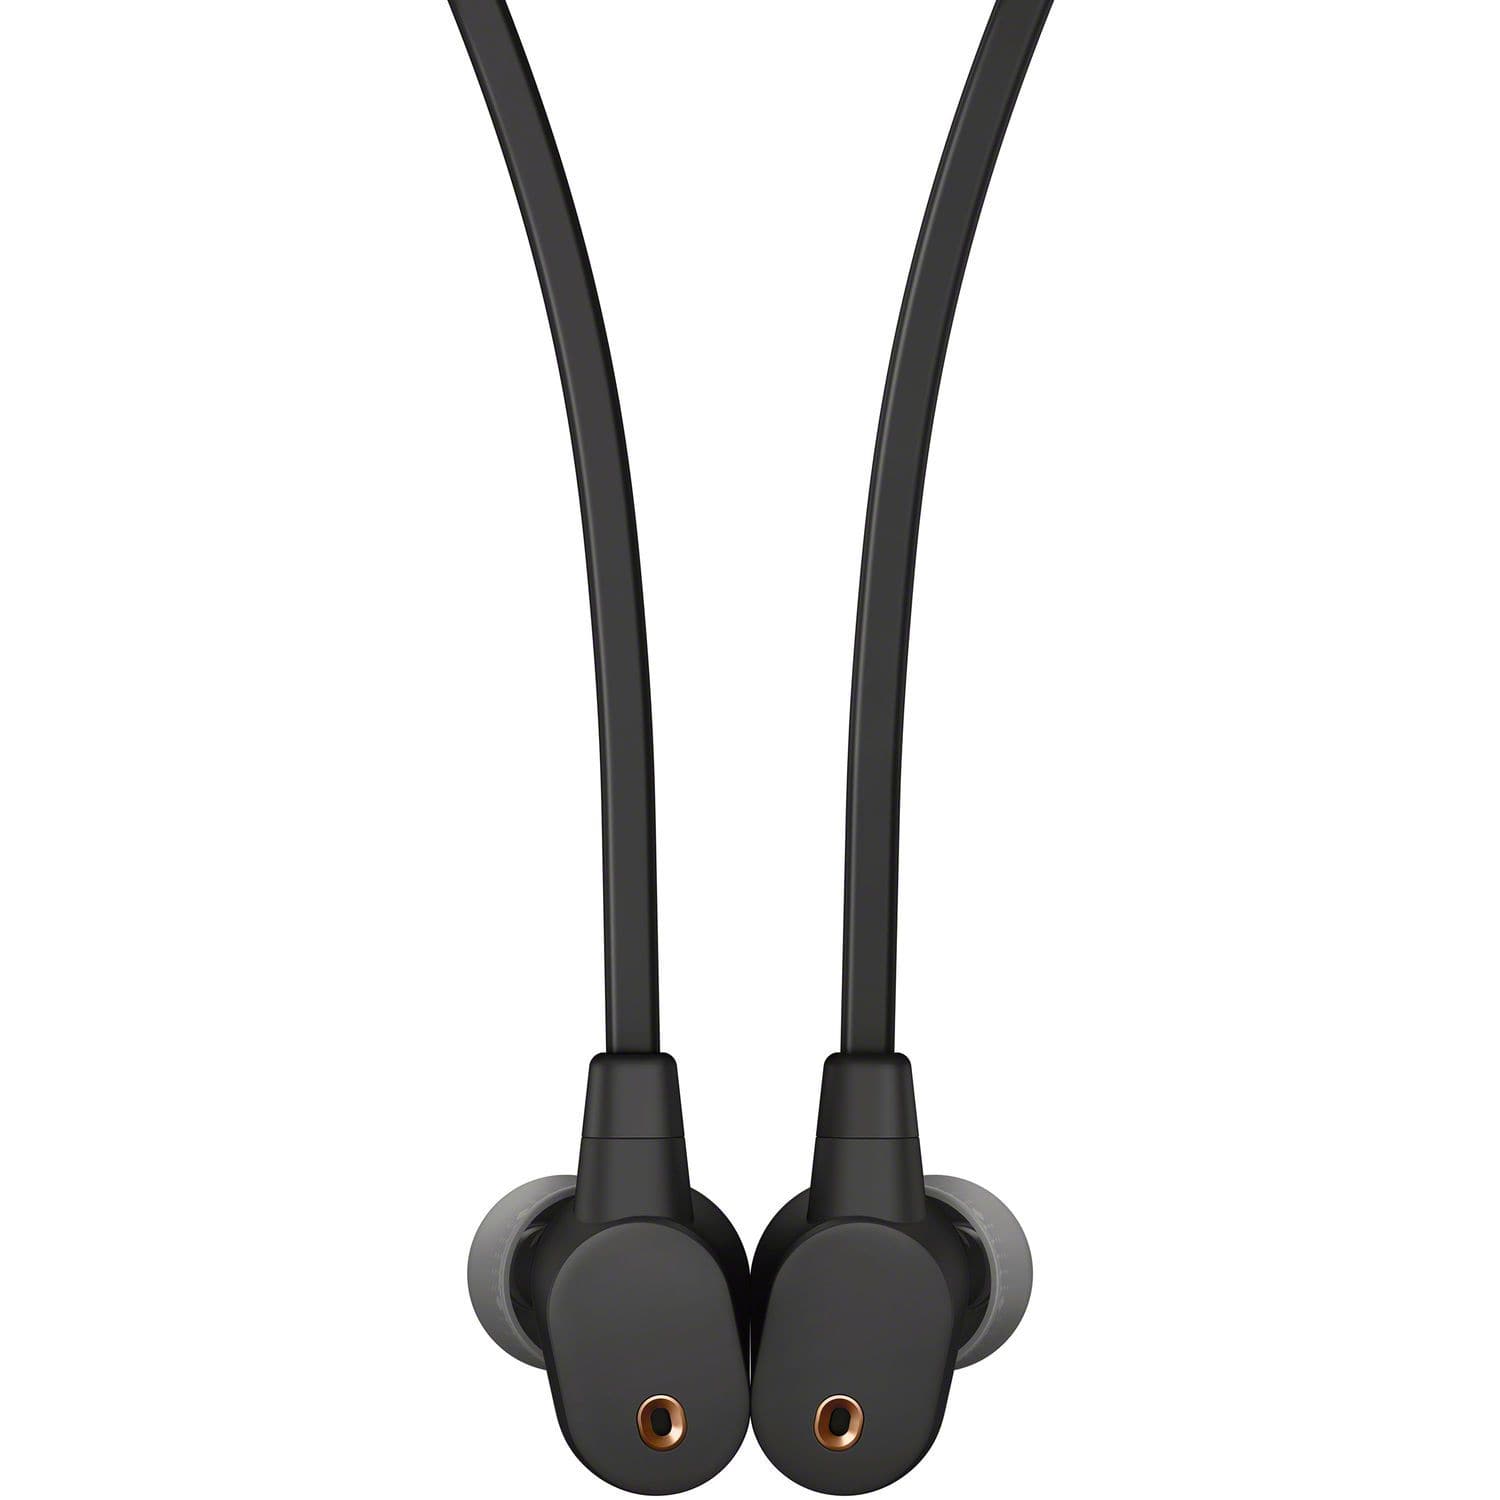 Sony WI-1000XM2 Noise-Canceling Wireless In-Ear Headphones